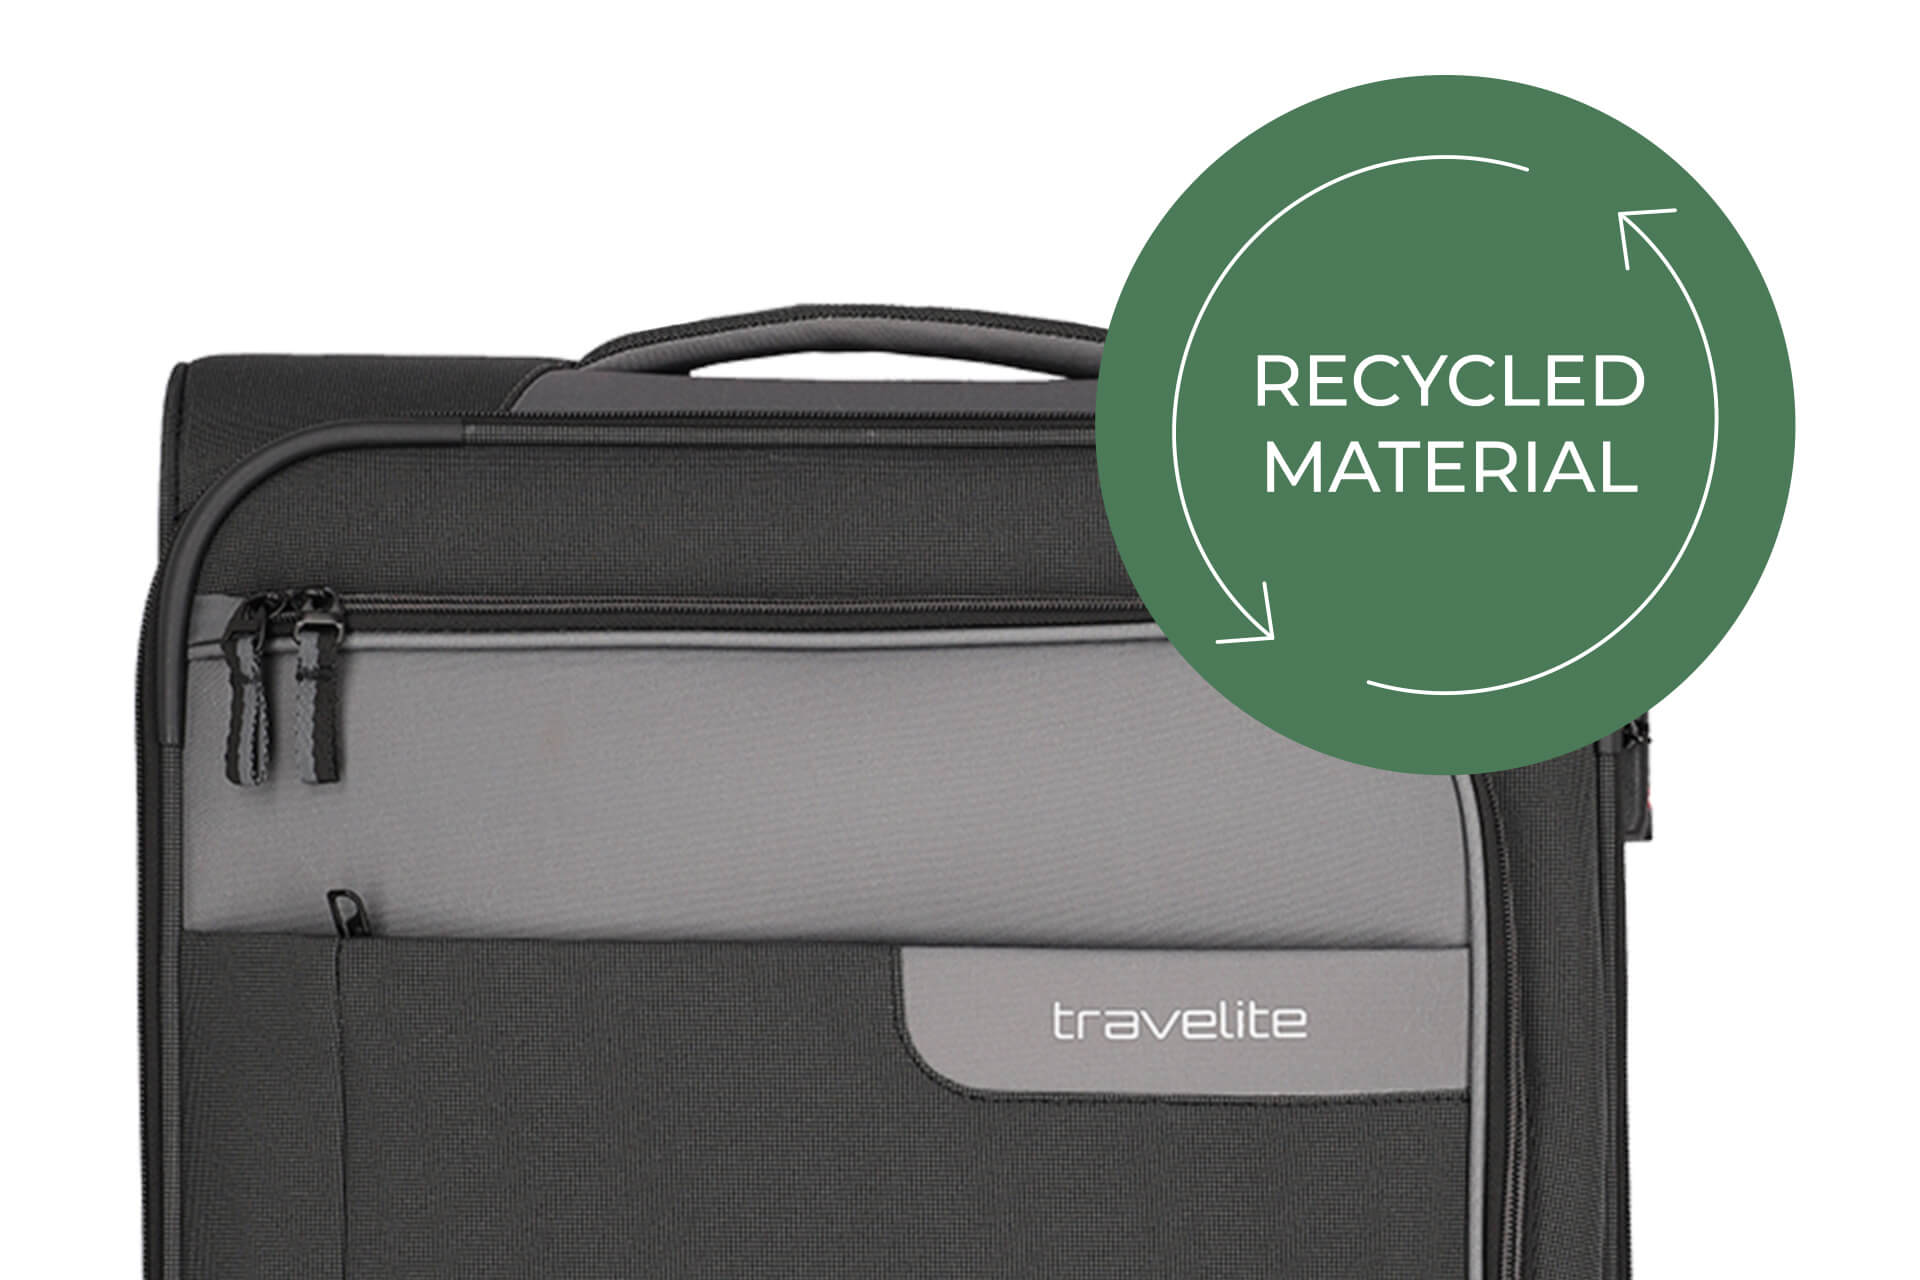 Weichgepäck Koffer Viia in schiefer von travelite recycled Material